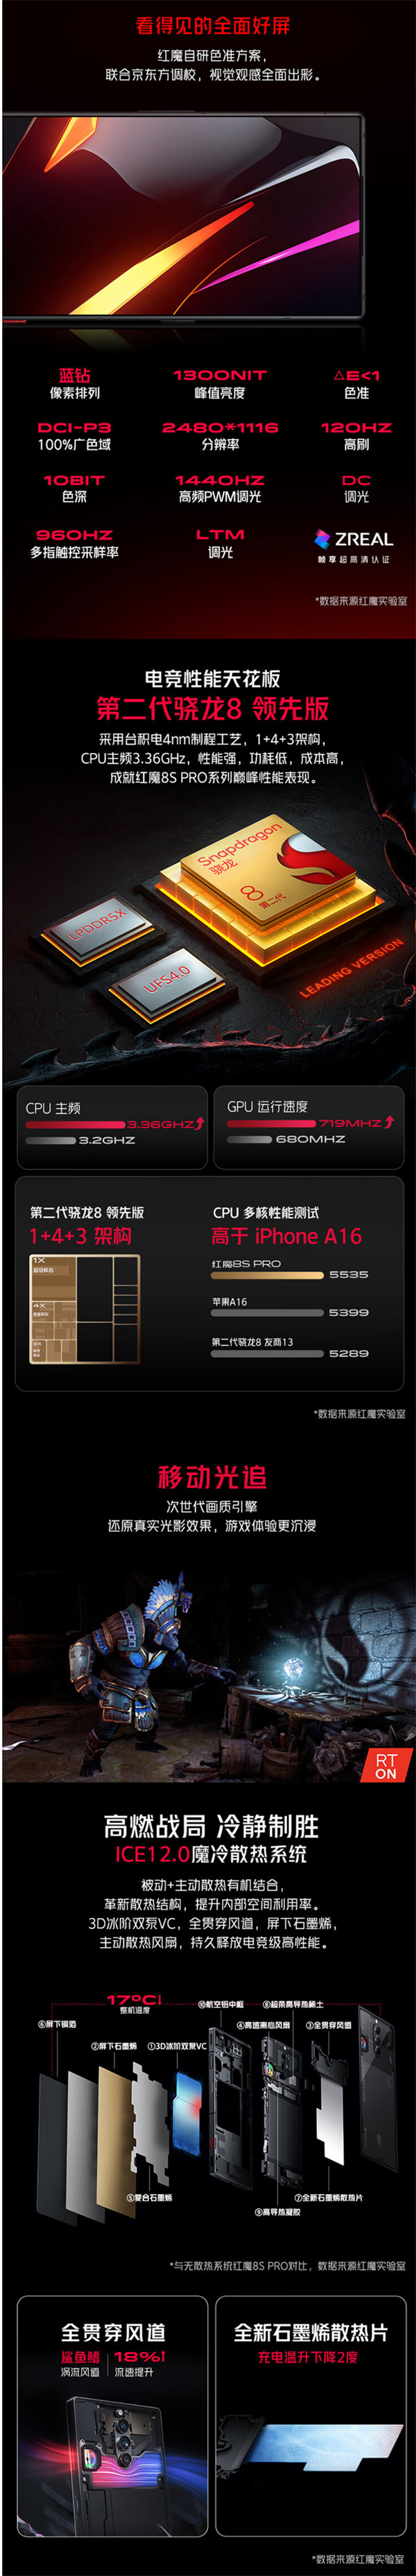 红魔 8S Pro+ 的 24GB+1TB 版本开售，售价 7499 元